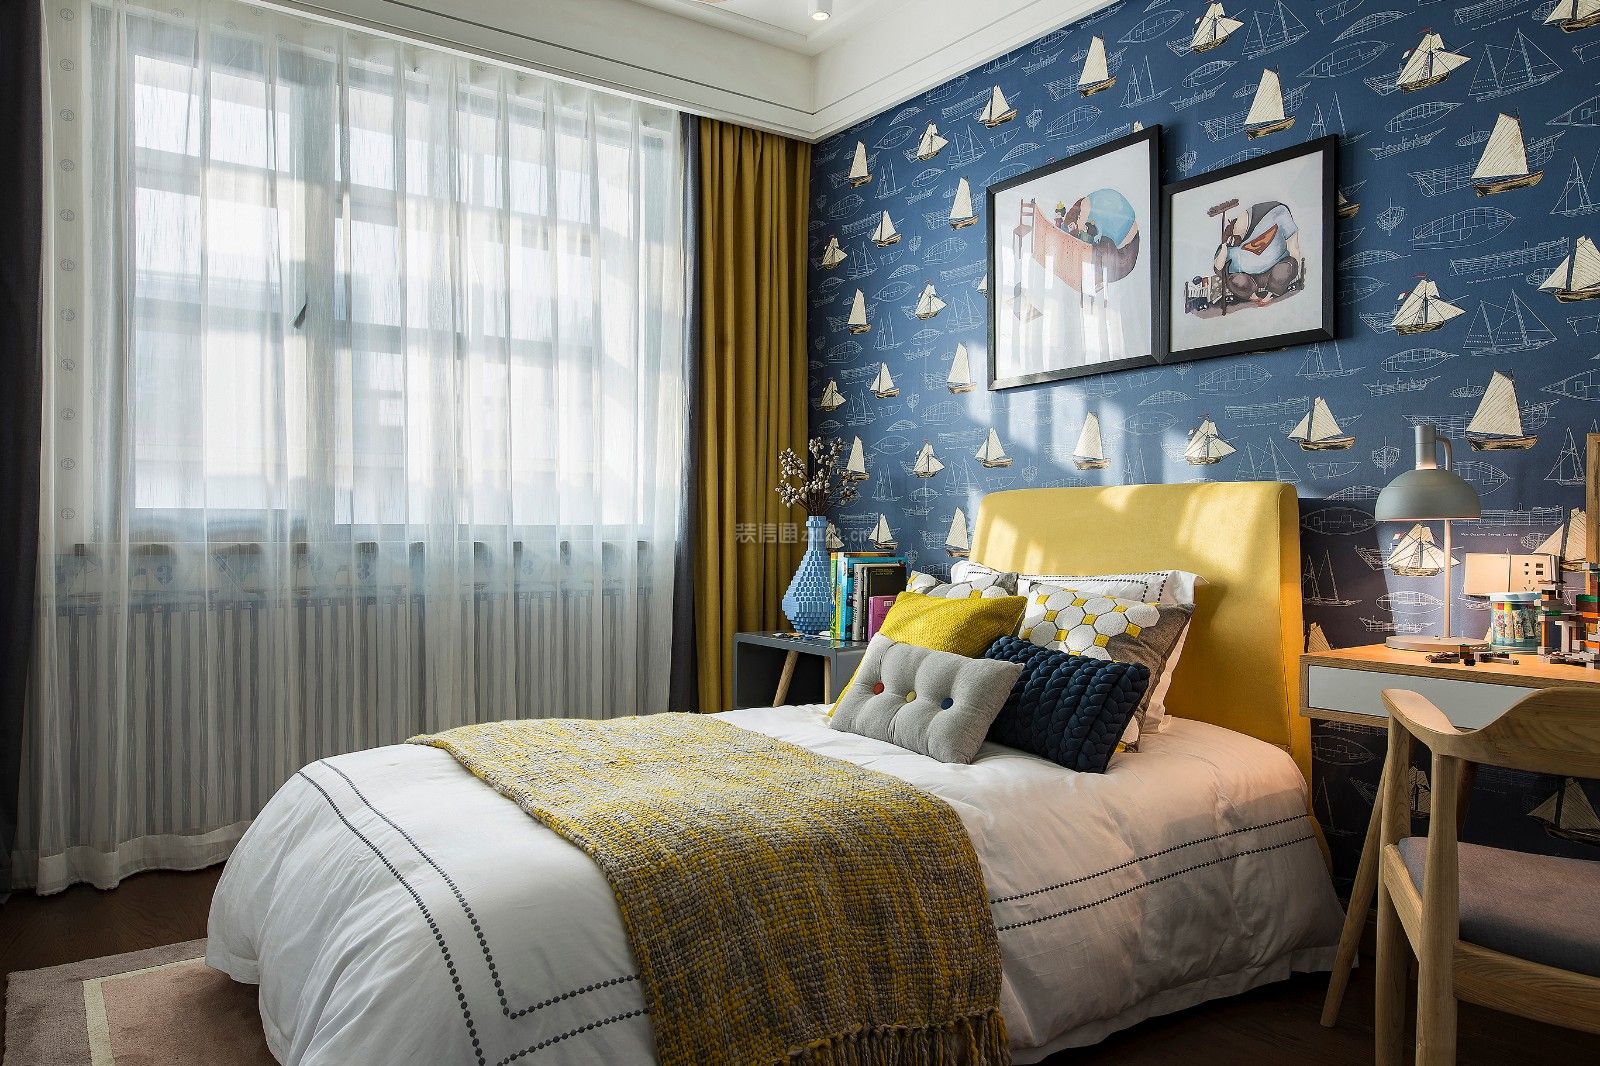 新中式风格古典卧室床头背景墙装修设计效果图 – 设计本装修效果图